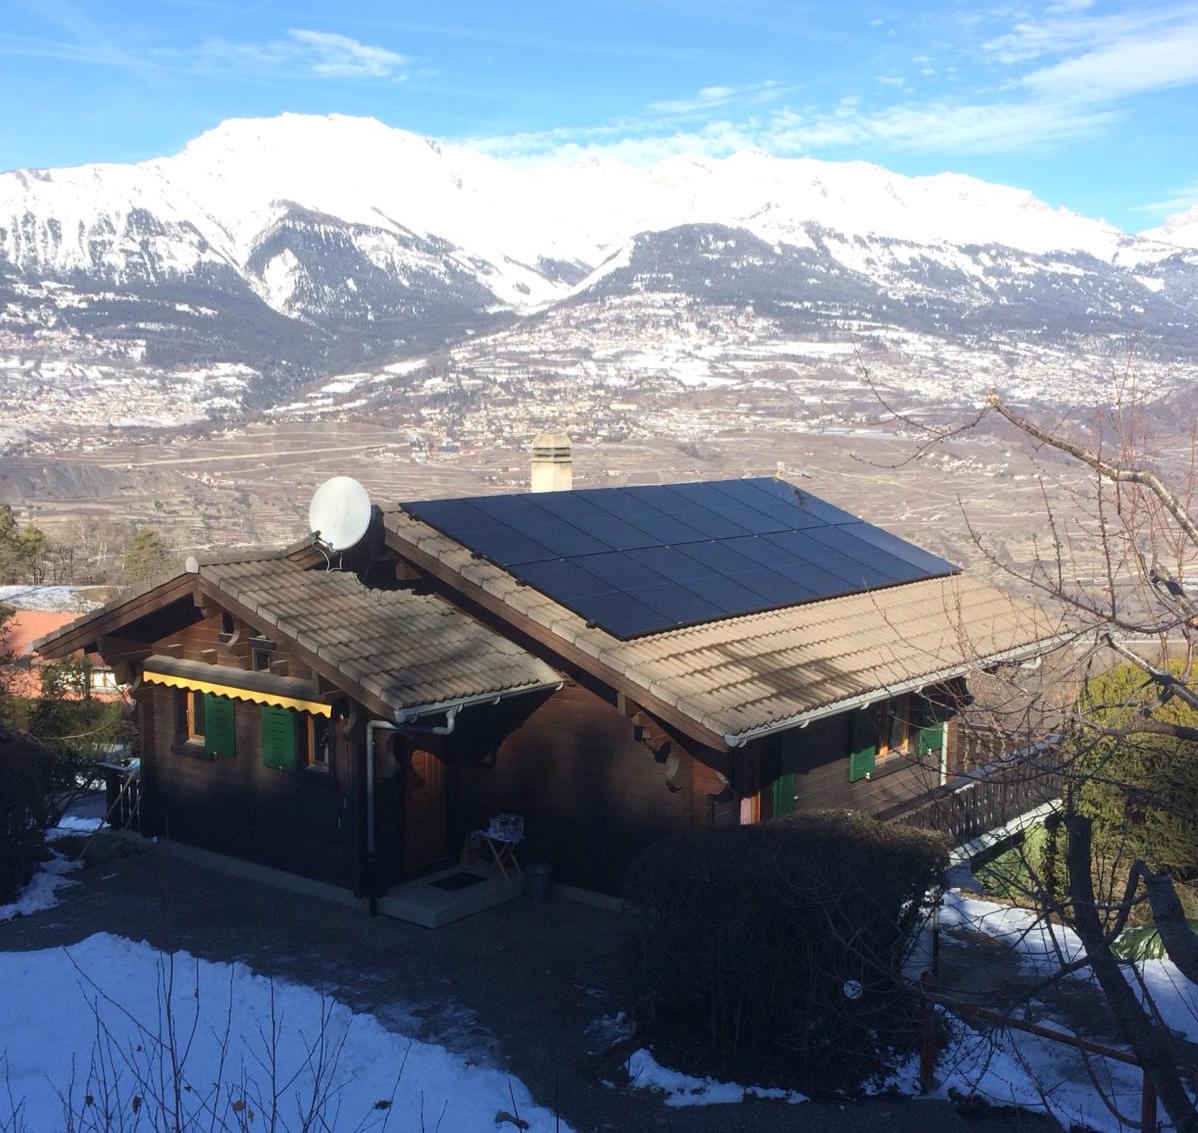 Installation de panneaux solaires sur un chalet de montagne, une étude de cas